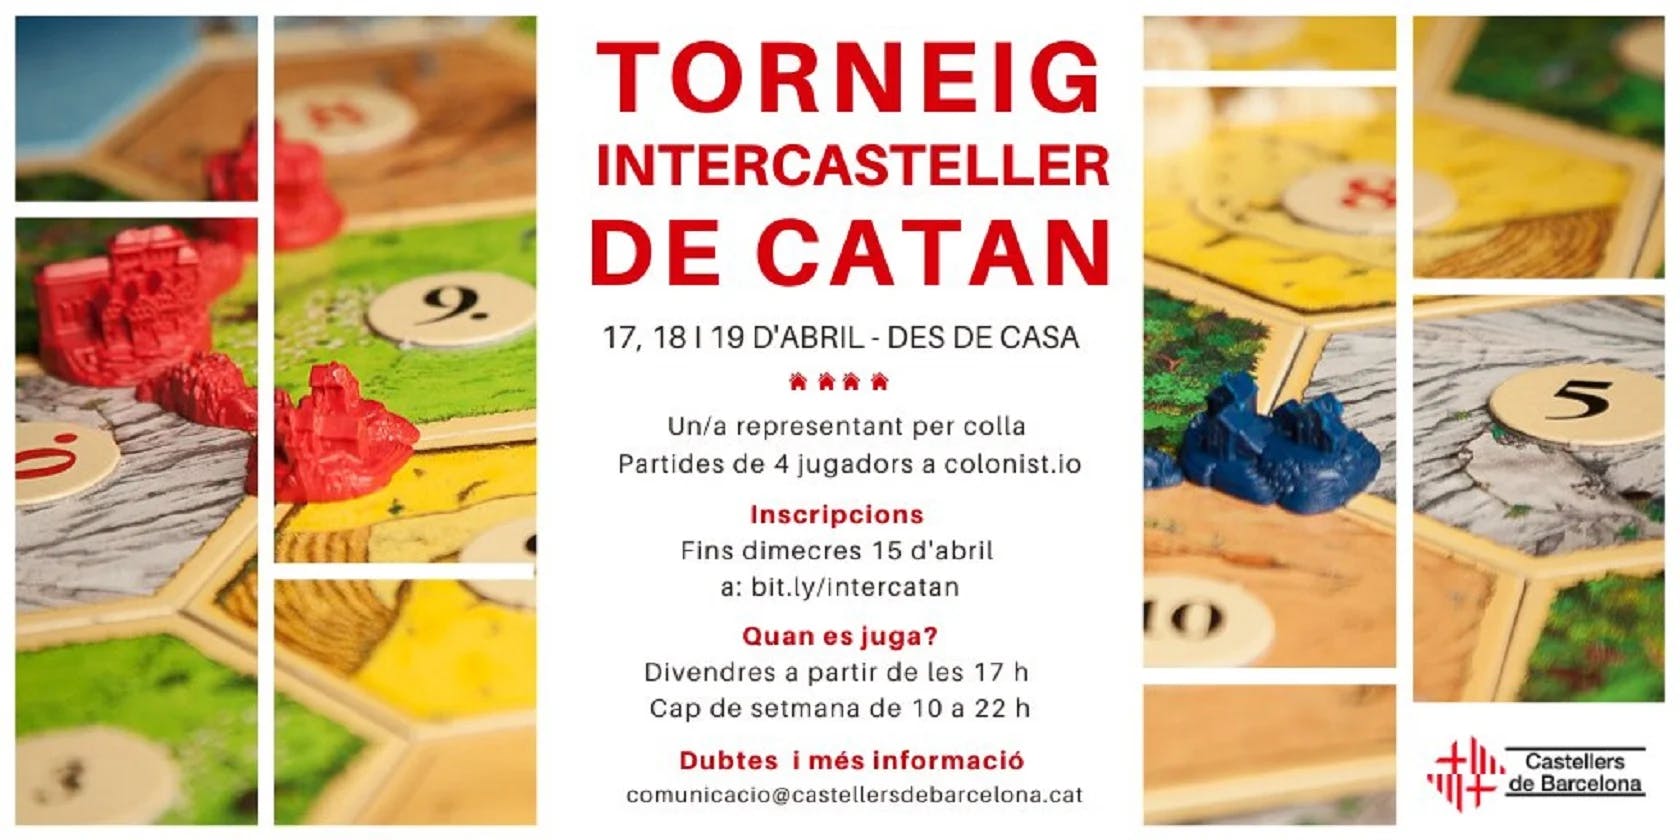 Els Castellers de Barcelona organitzen el primer Torneig Intercasteller de Catan